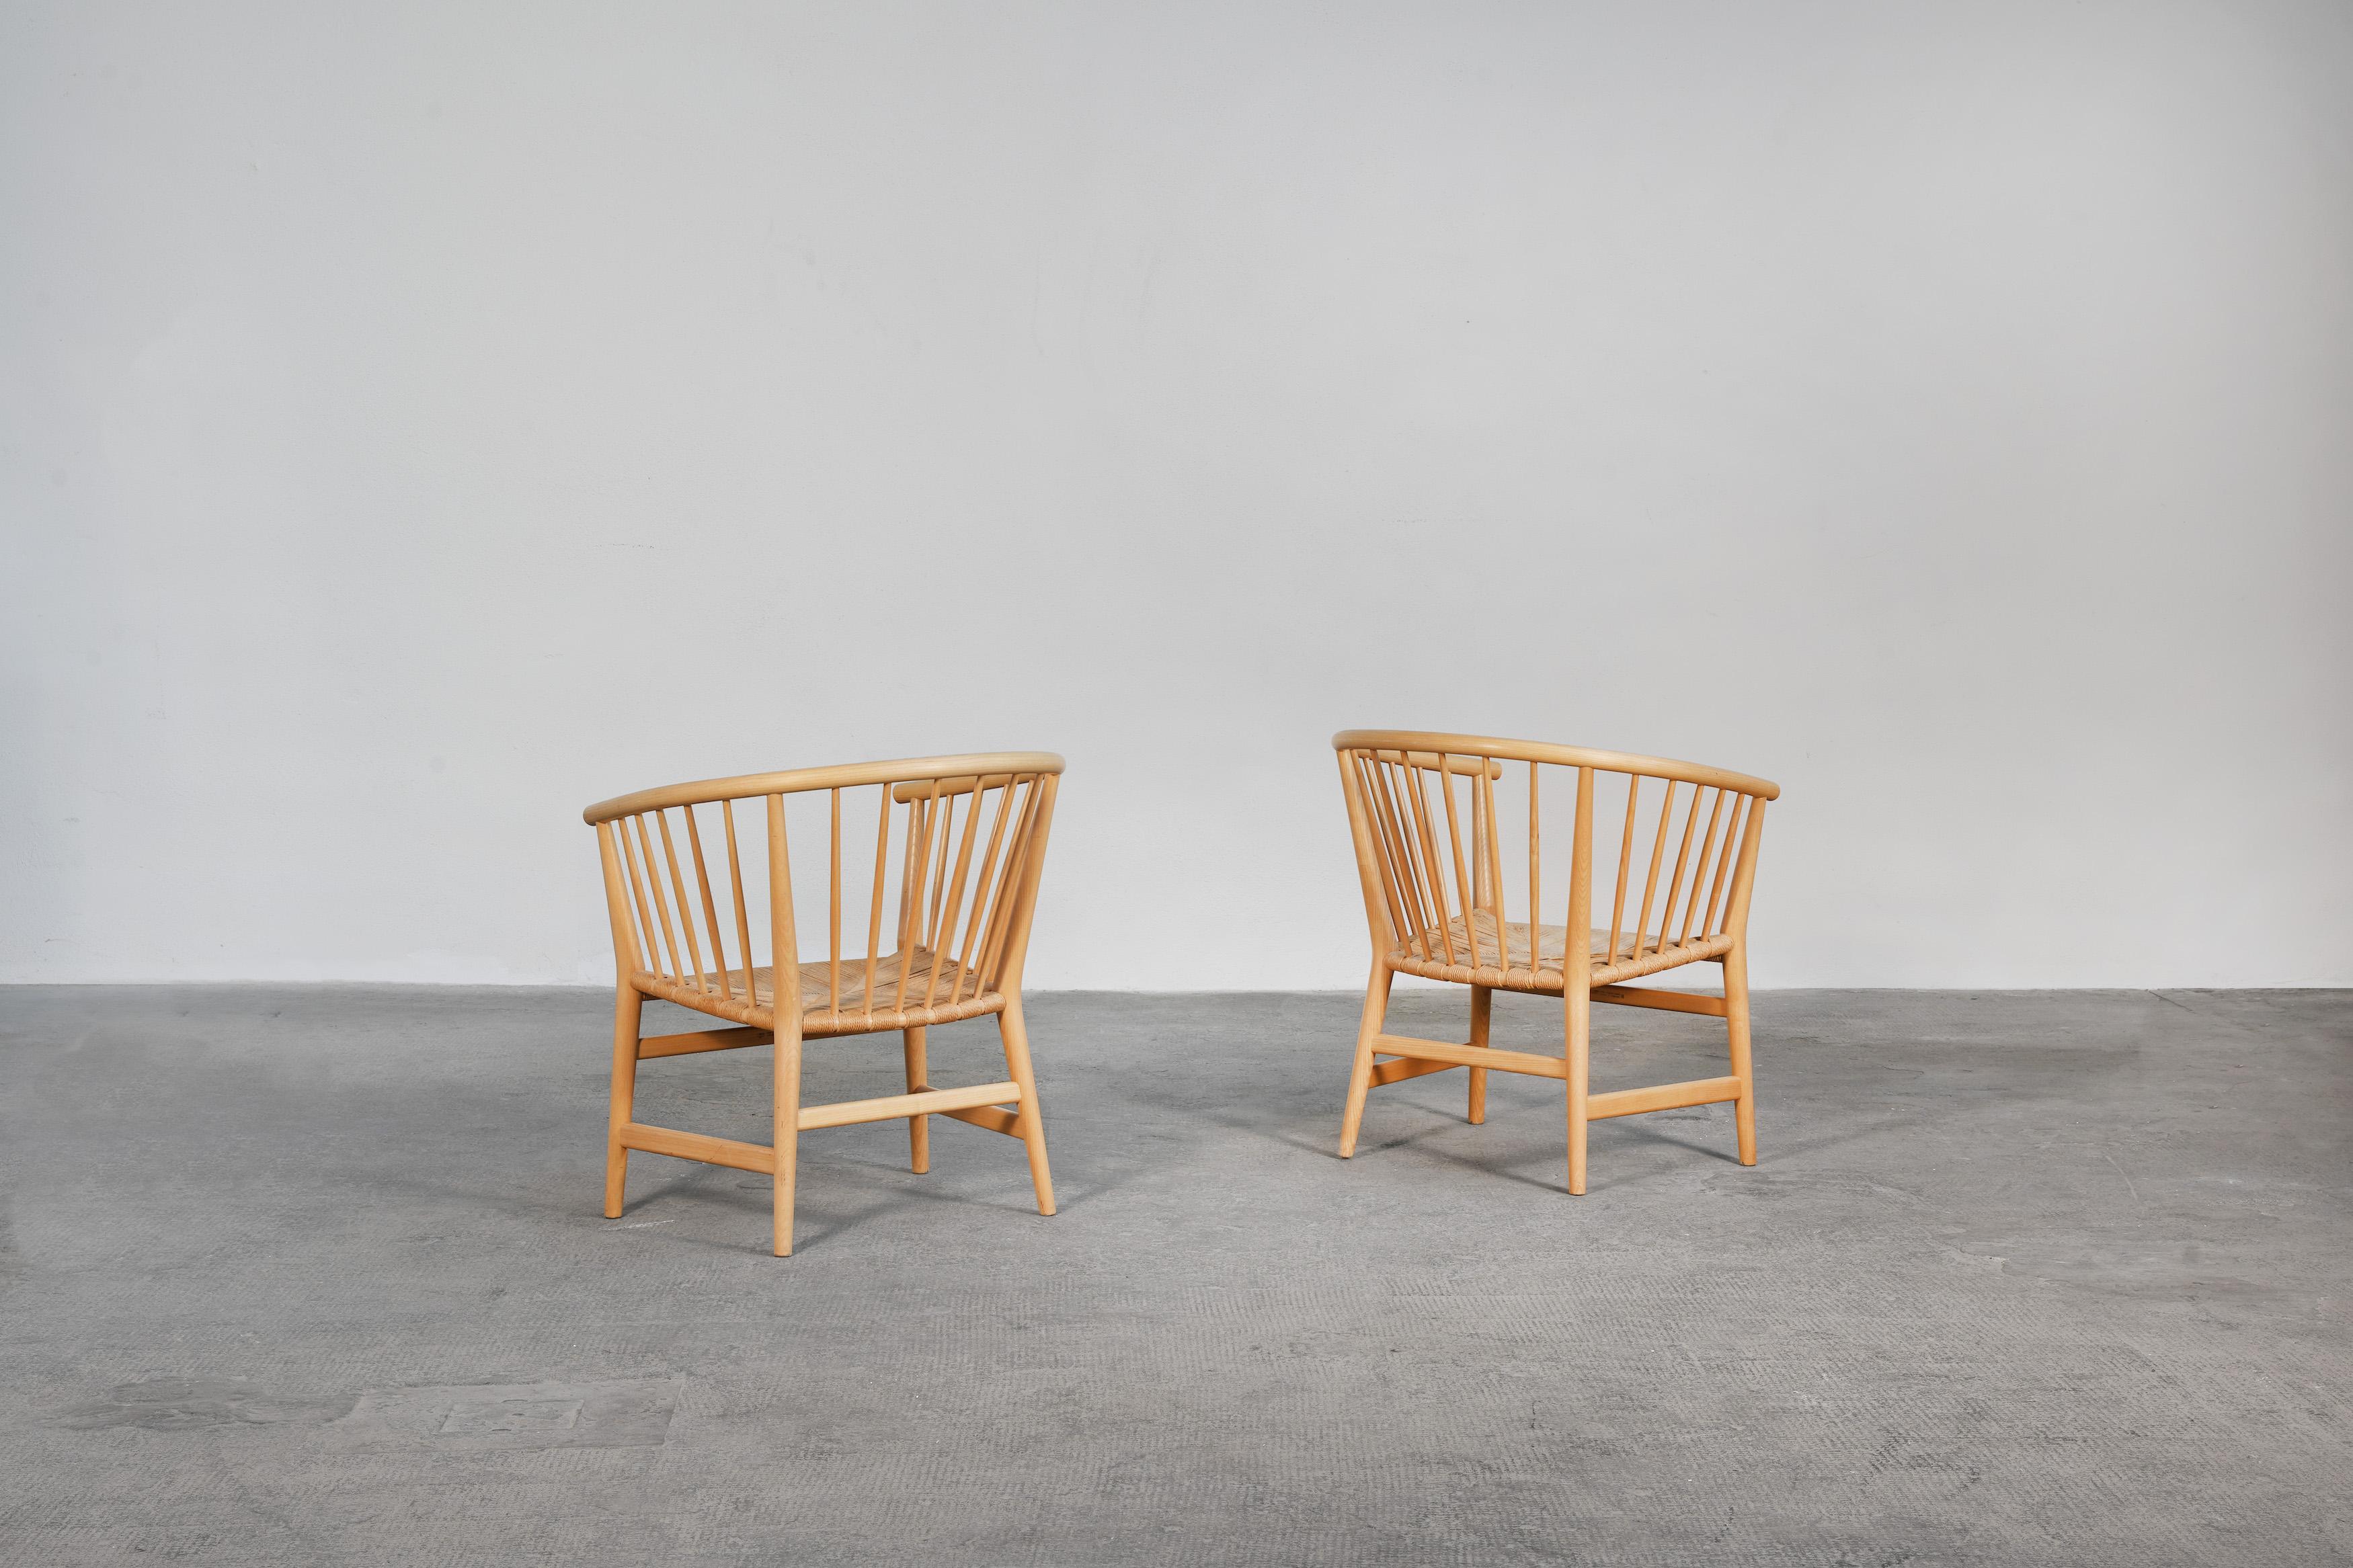 Paire de magnifiques chaises longues conçues par Hans J. Wegner et produites par PP Møbler au Danemark, 1973.
Les deux chaises sont fabriquées en bois de frêne et sont en très bon état d'origine, sans aucune restauration ni dommage majeur. Les deux